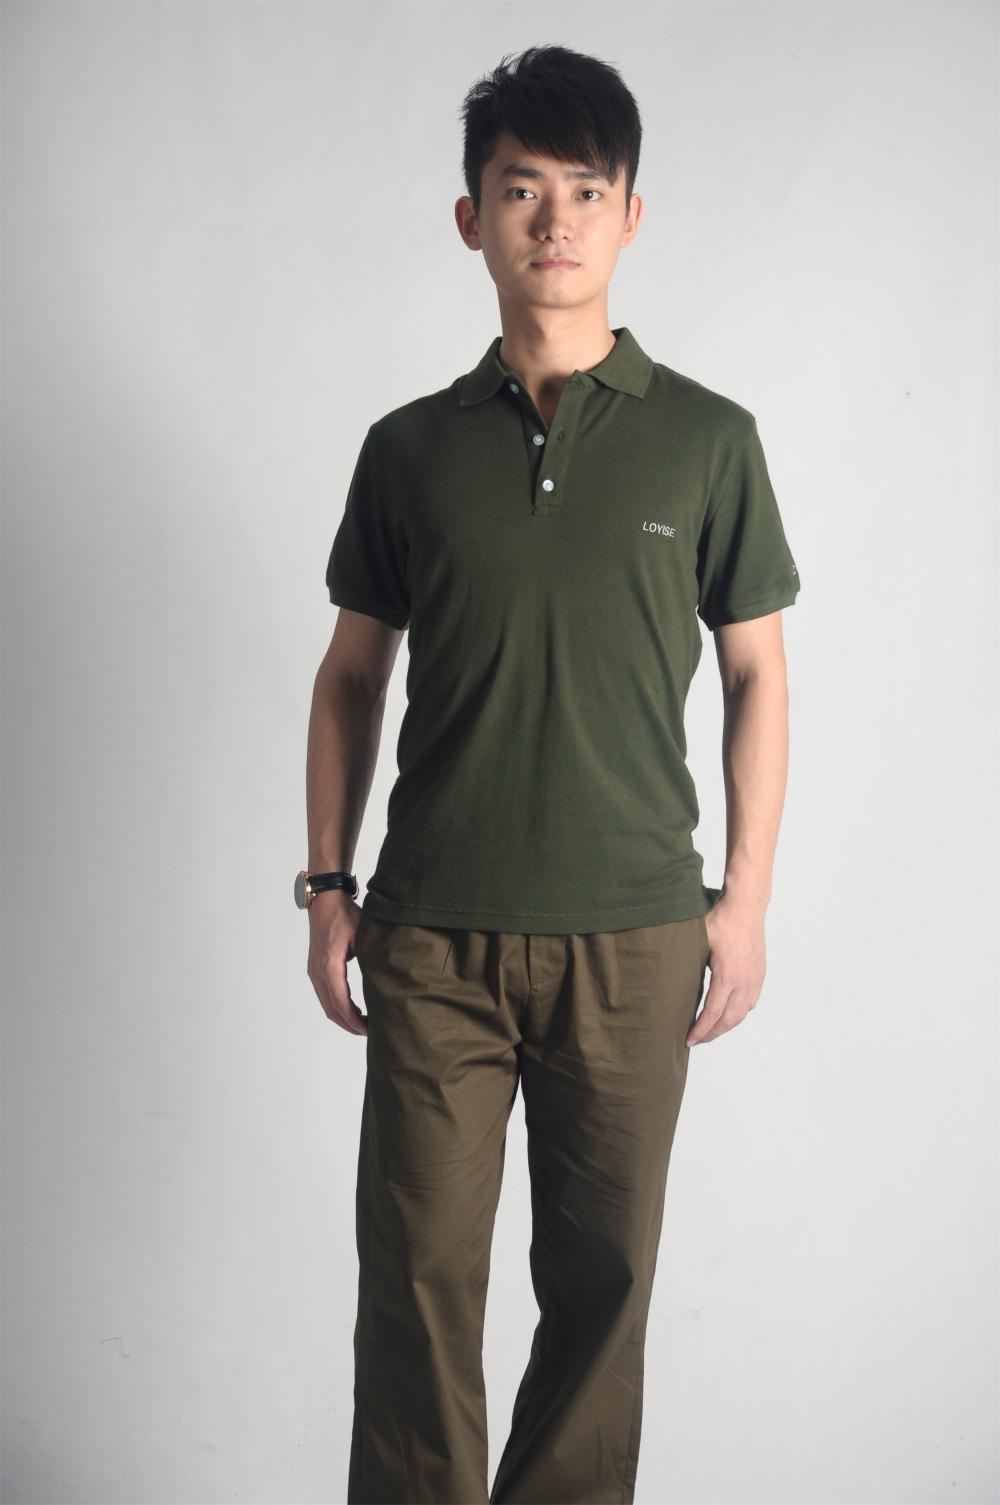 Wholesale cotton businessman polo shirt collar polo shirt